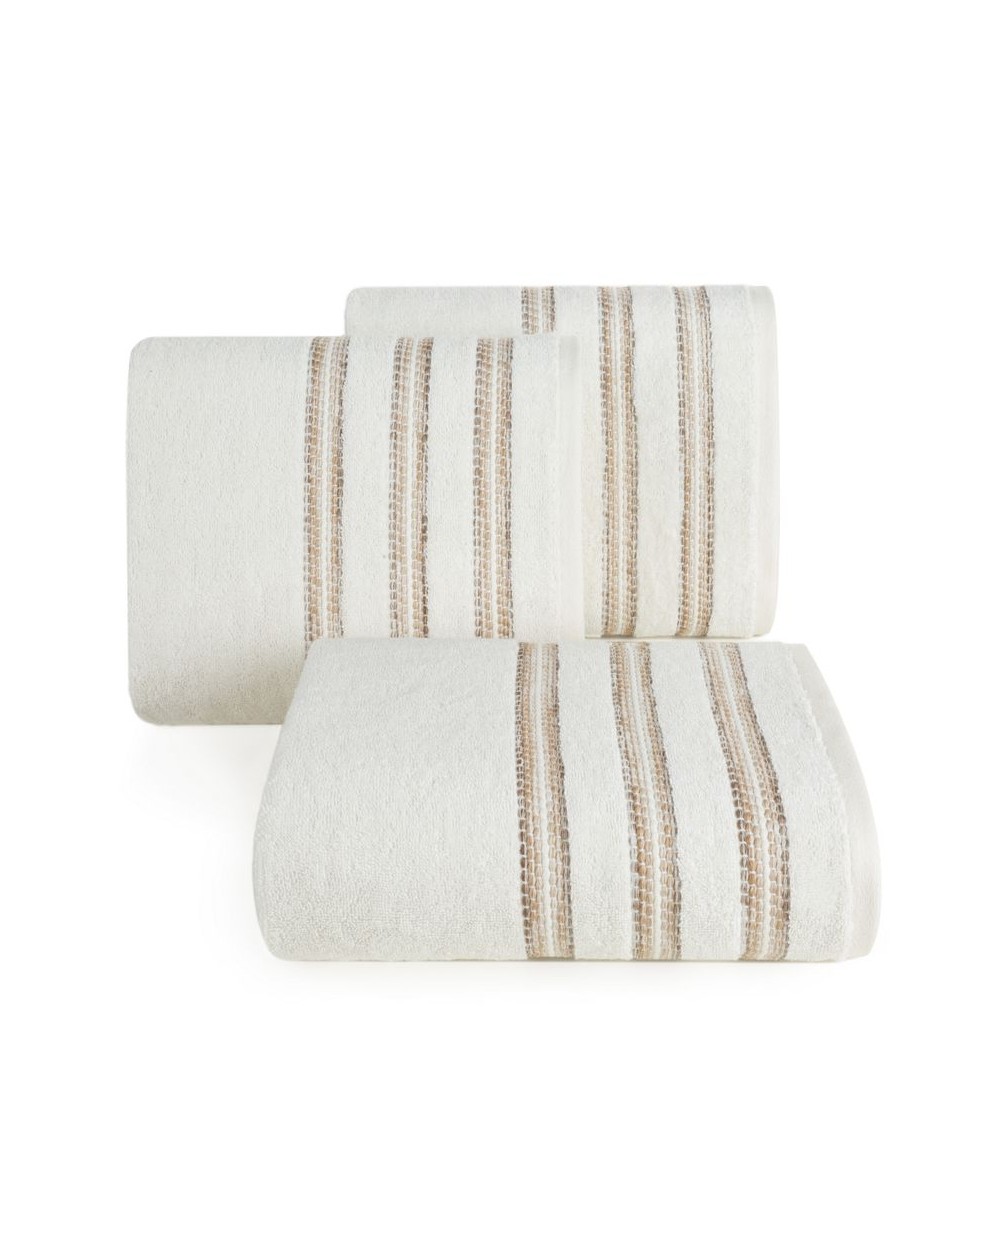 Ręcznik bawełna 70x140 Selena kremowy